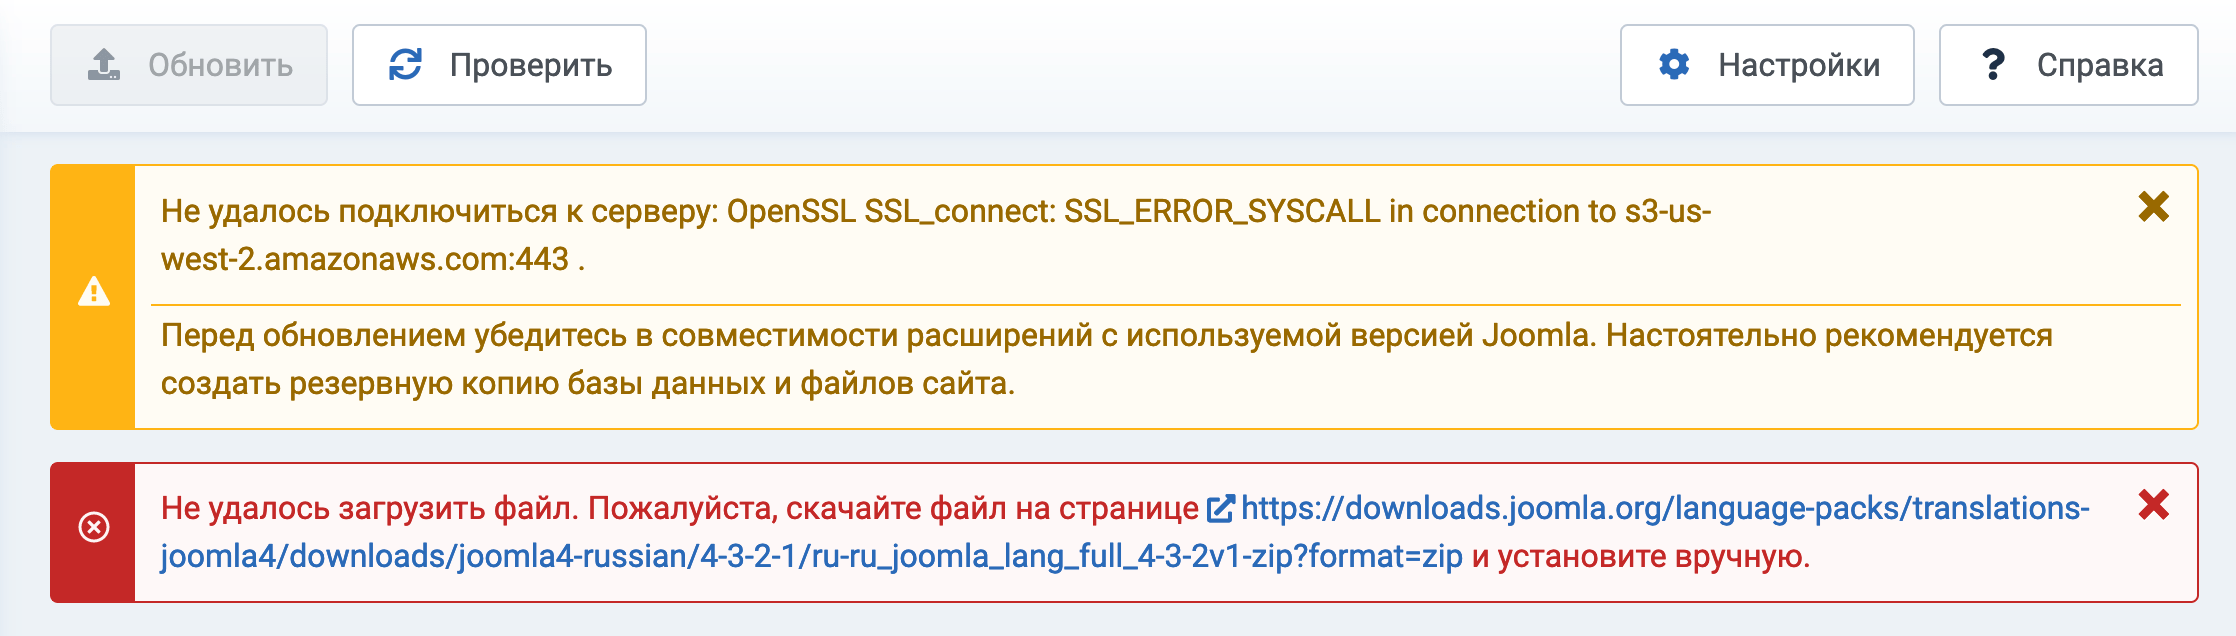 Ошибка при установке или обновлении пакета русской локализации Joomla